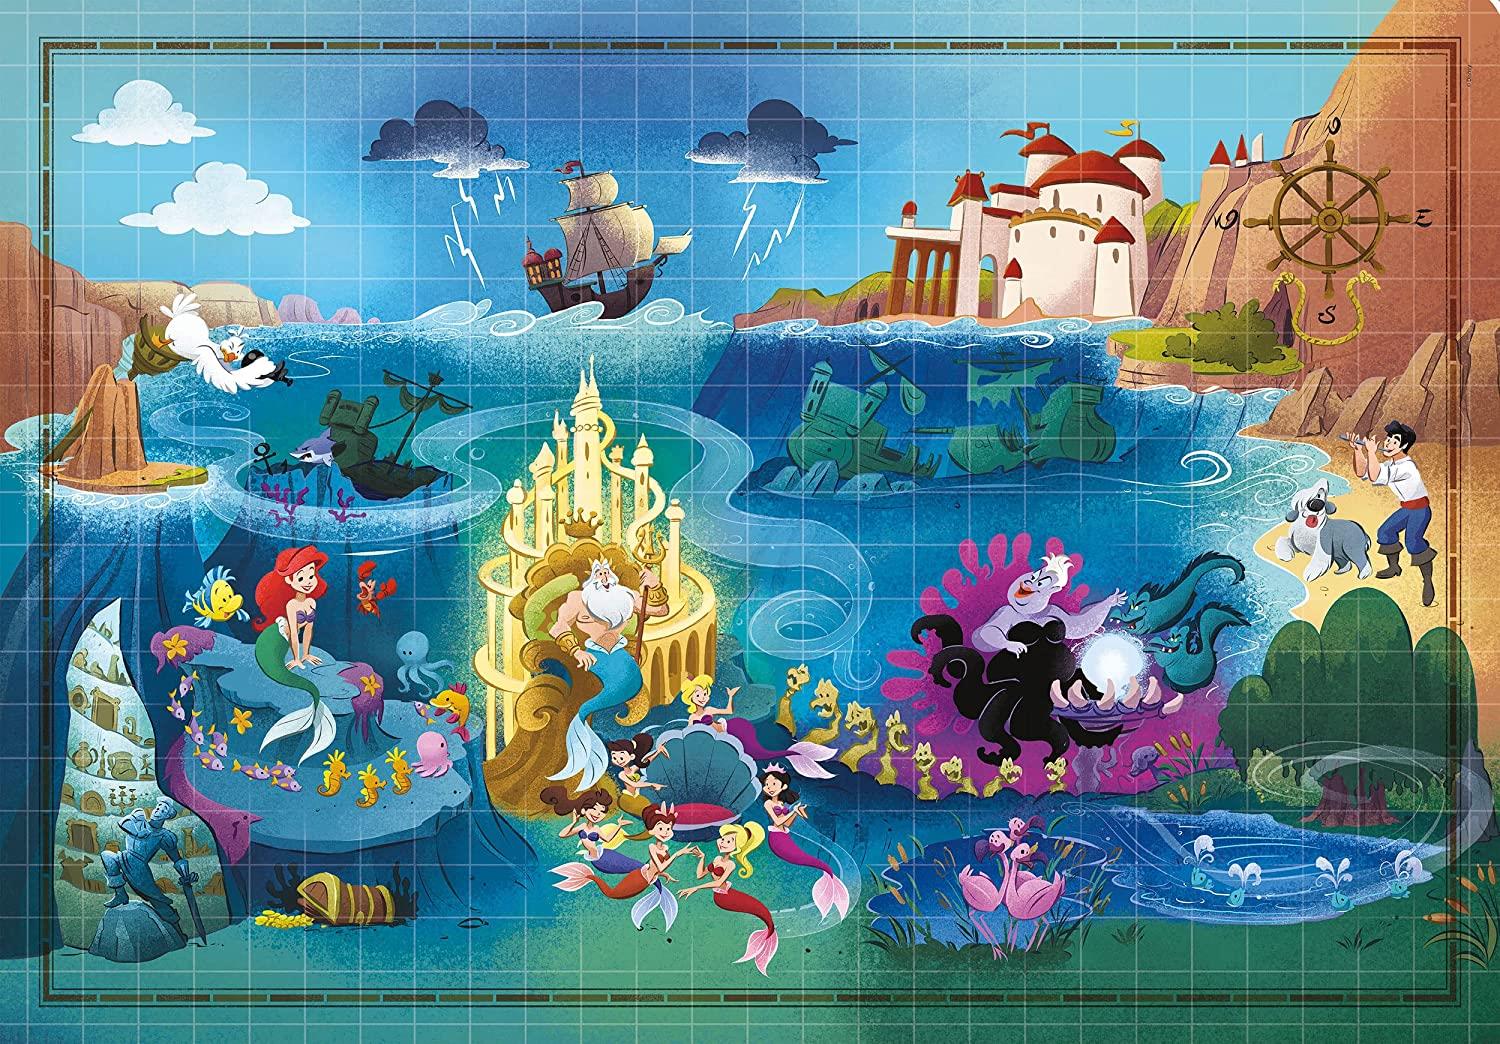 Clementoni Disney Maps Little Mermaid Jigsaw Puzzle (1000 Pieces)